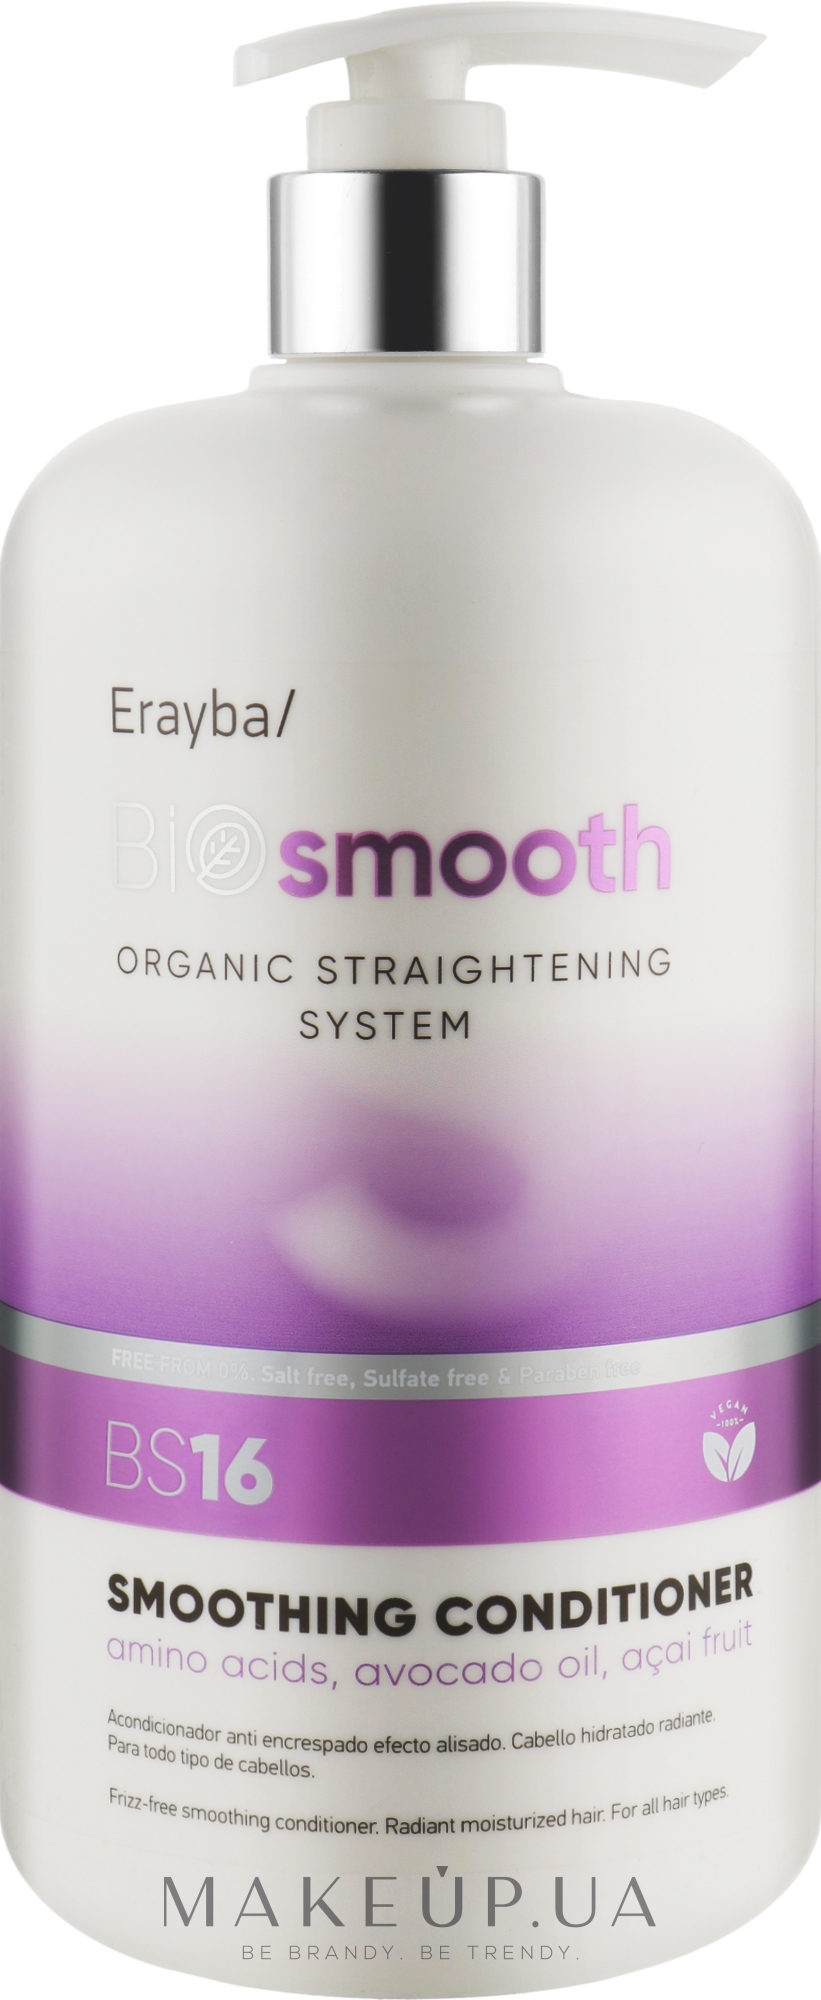 Кондиционер для выпрямления волос - Erayba Bio Smooth Smoothing Conditioner BS16 — фото 1000ml